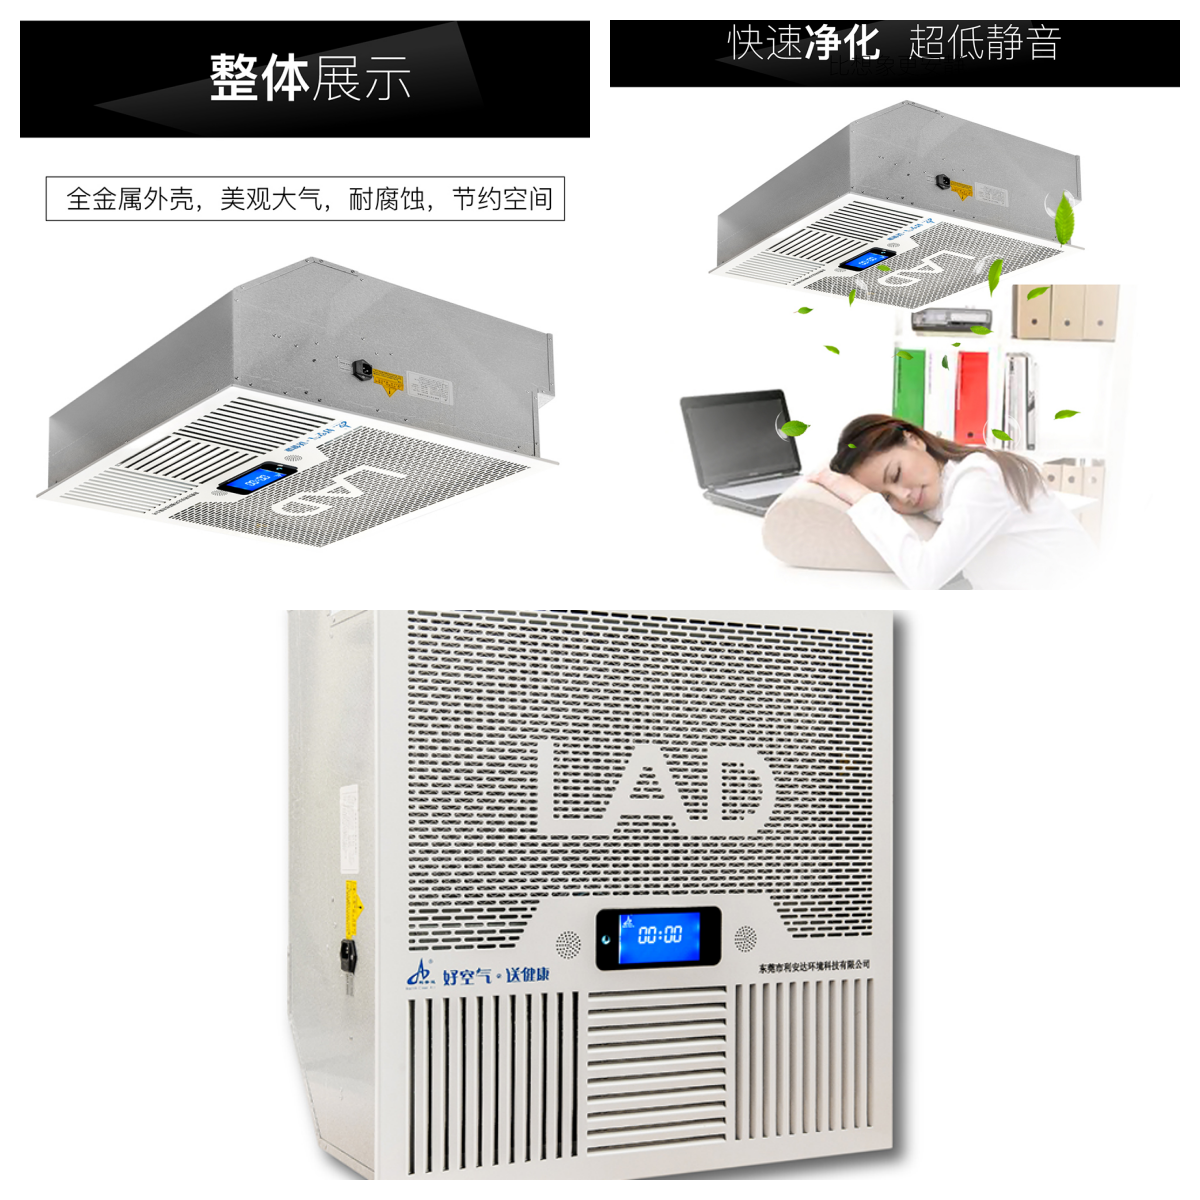 LAD/KJD-T1000型吸頂式空氣凈化消毒機.png